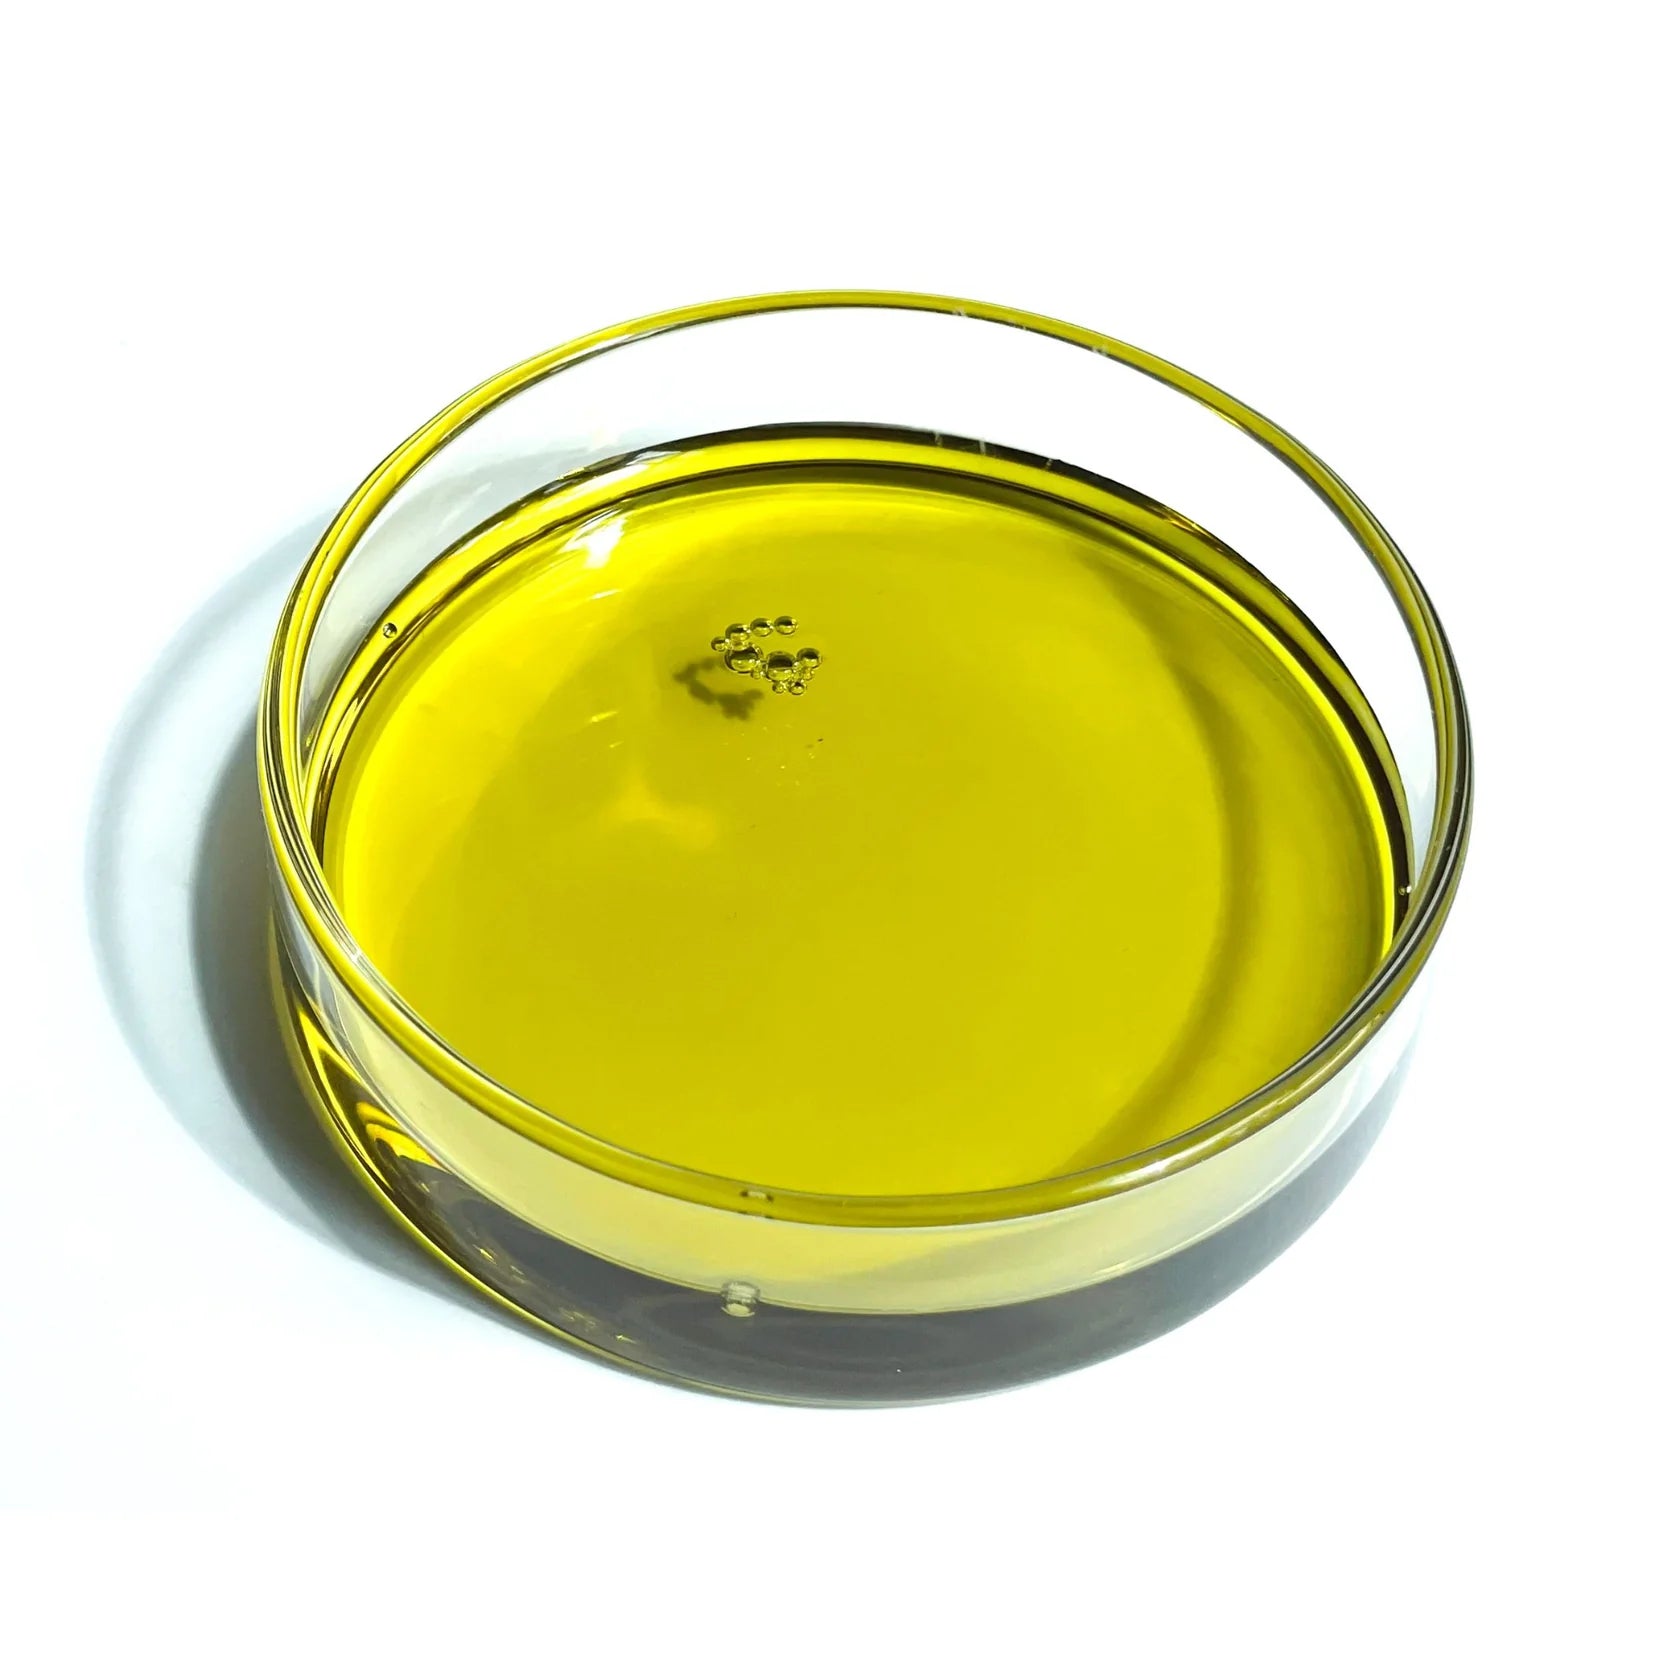 Rthvi huile naturelle pour la croissance des cheveux - 60ml